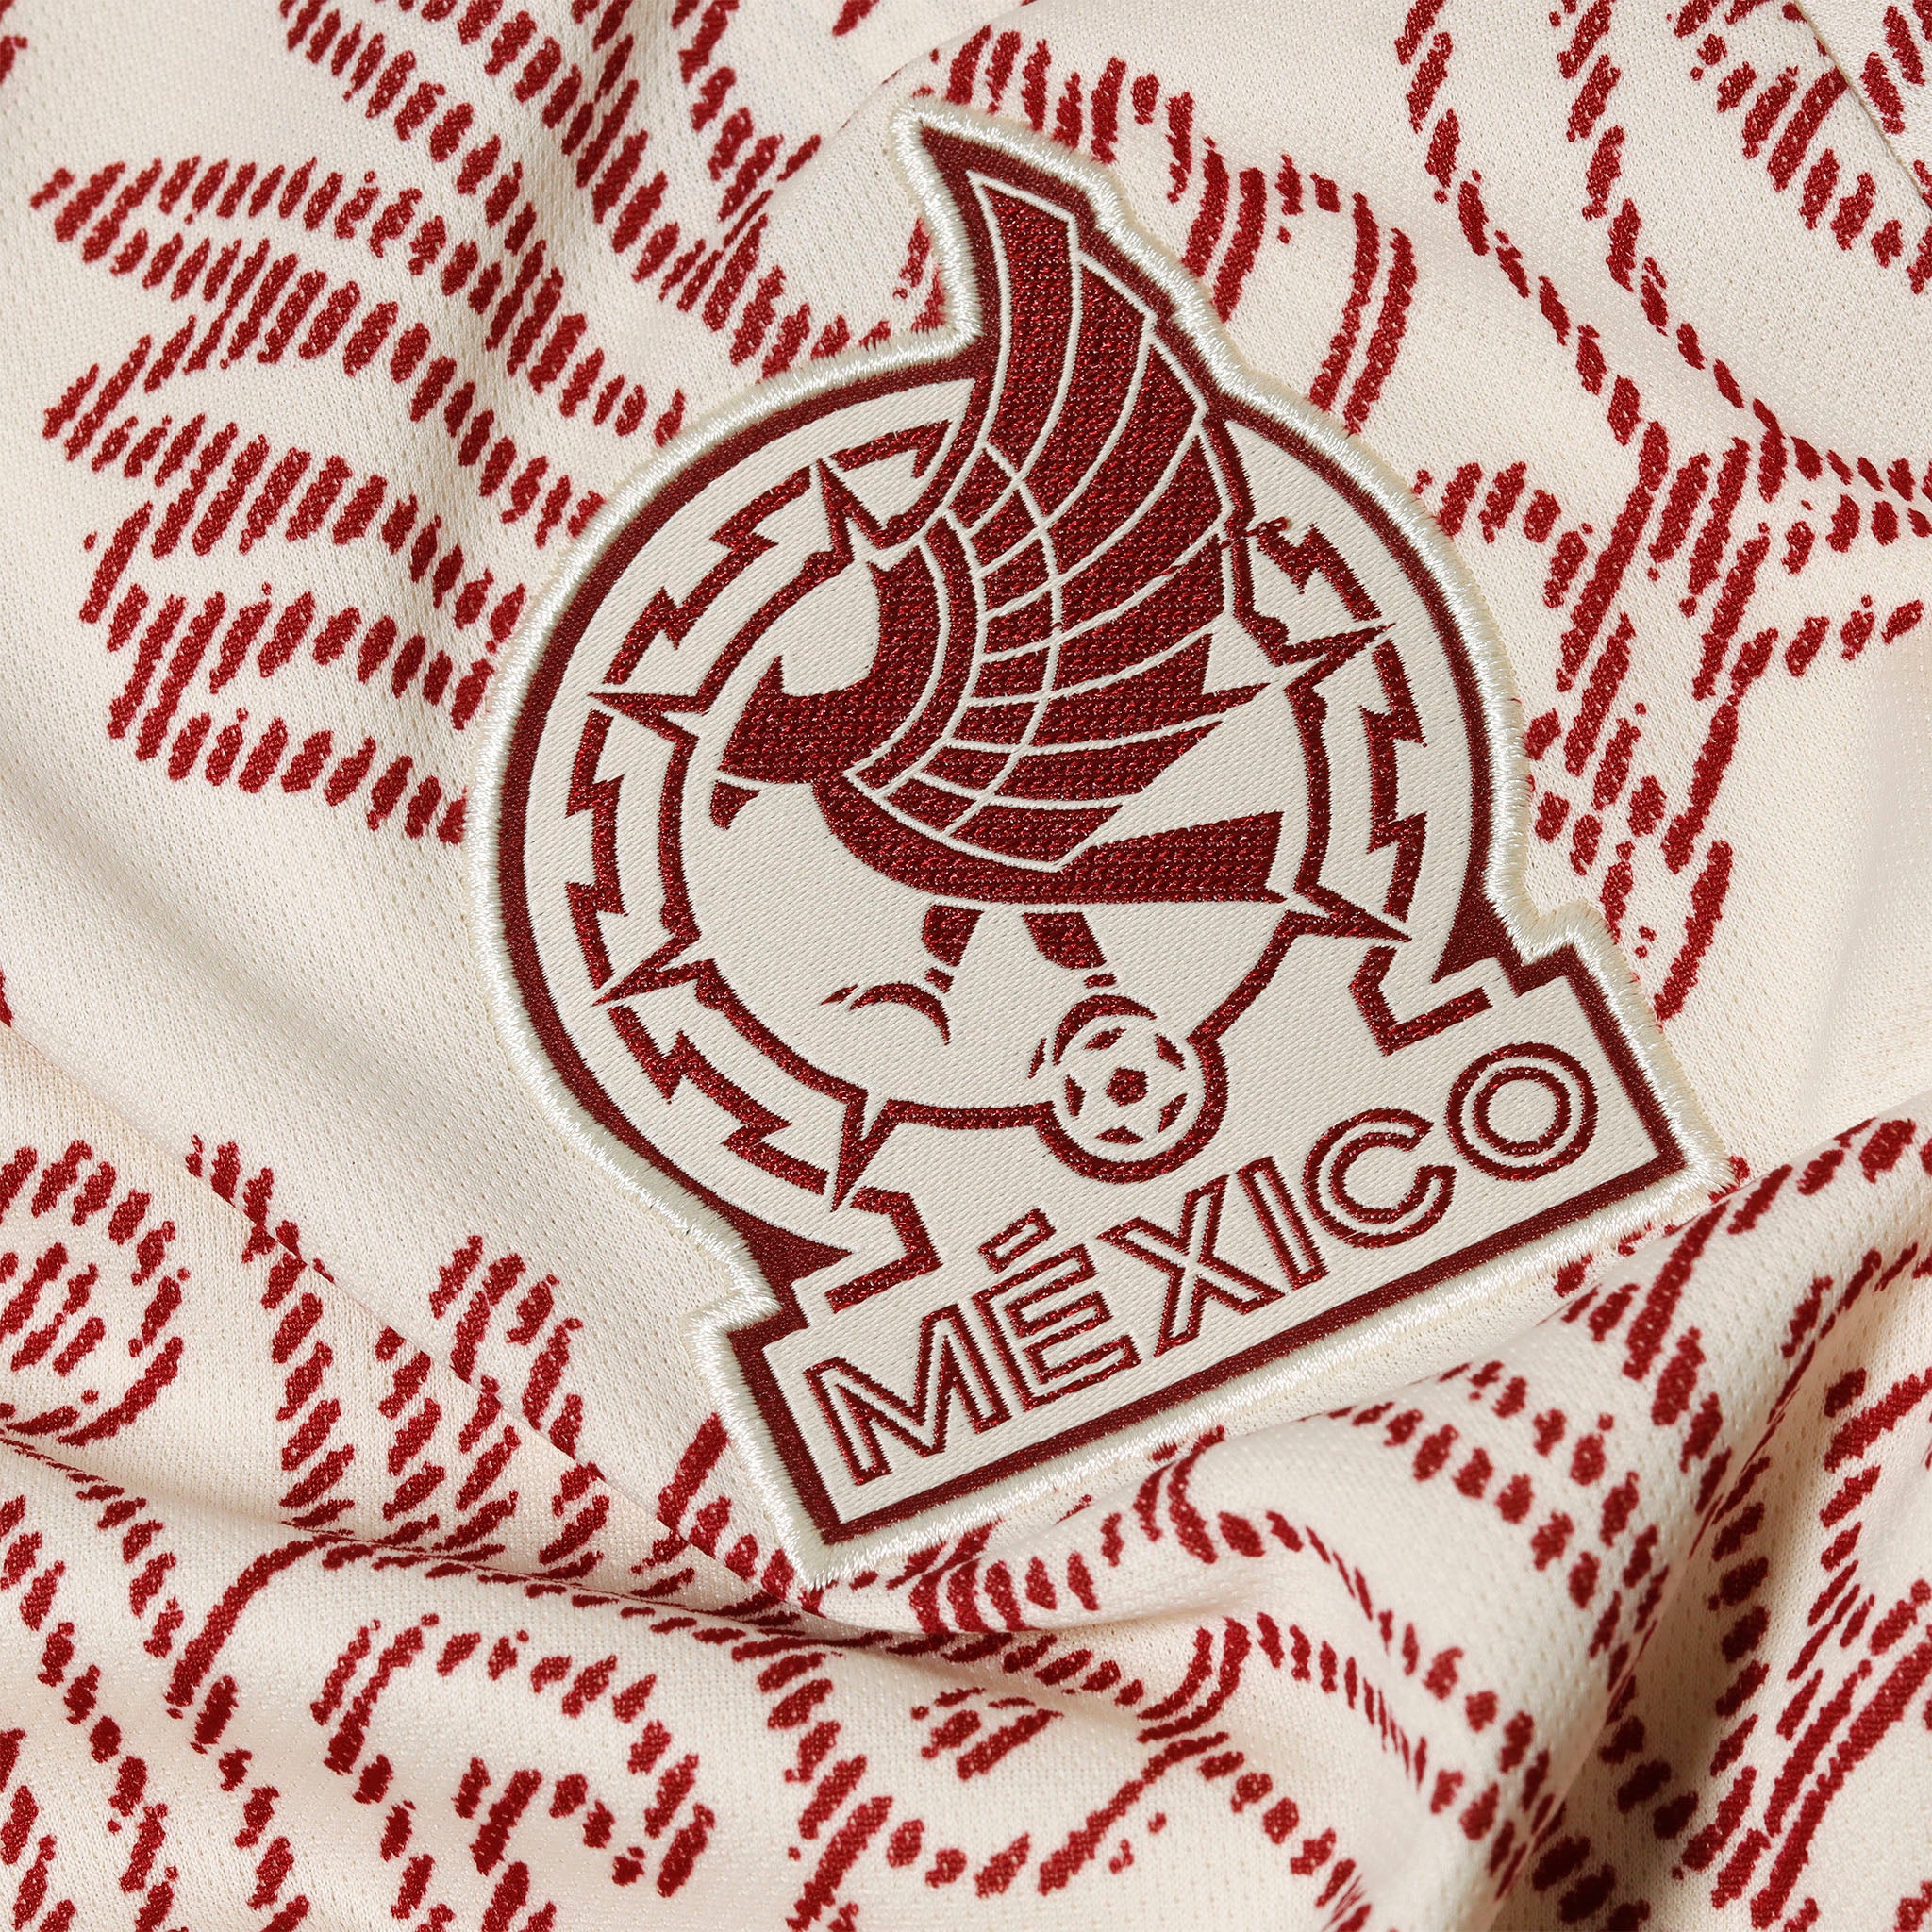 Jersey Adidas Selección Nacional de México